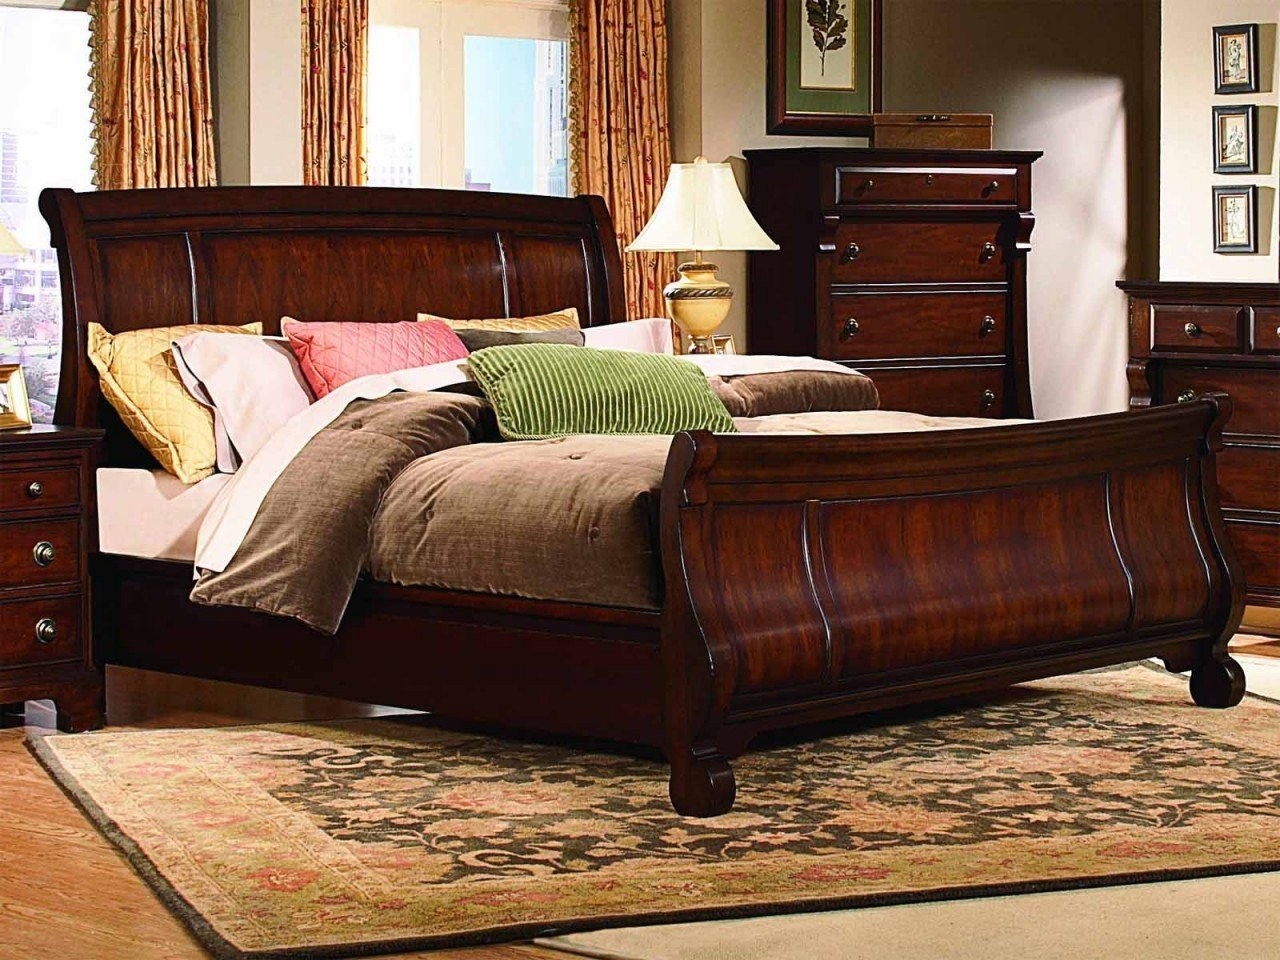 Queen sleigh bedroom set home furniture design